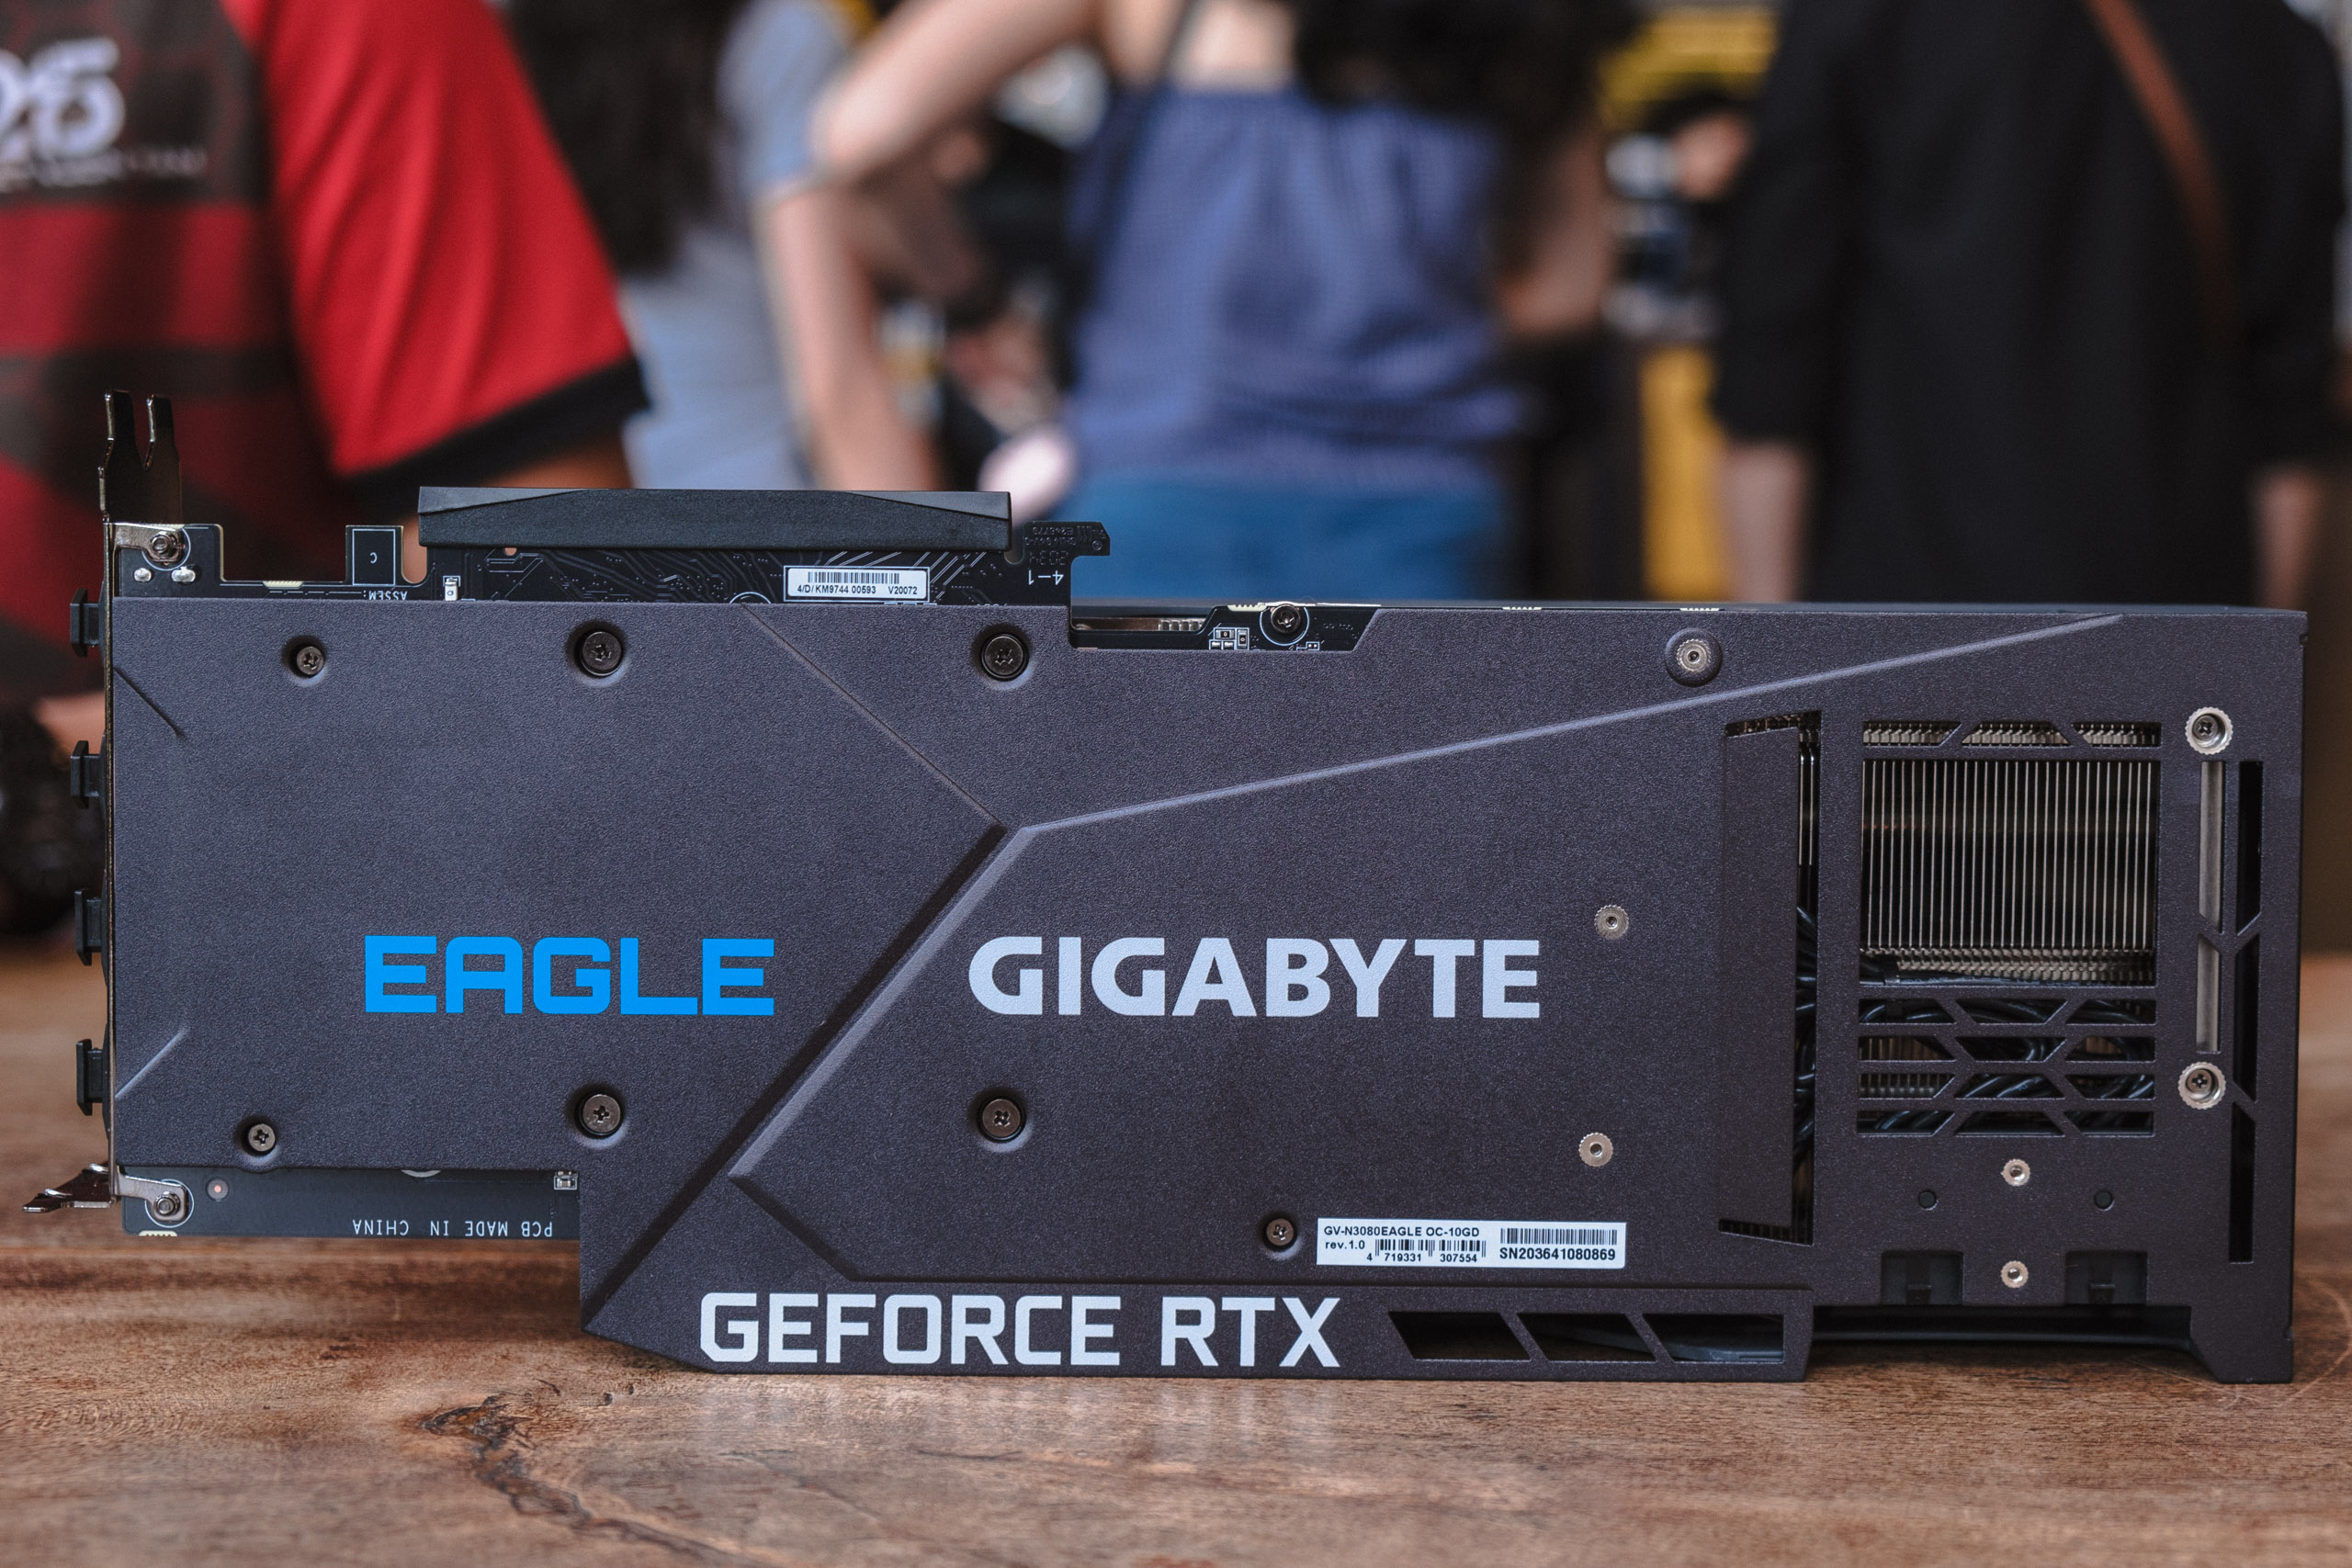 Trên tay card đồ hoạ GIGABYTE Geforce RTX 3080 EAGLE OC 10G mới: Hệ thống tản nhiệt mới mát hơn, mạnh mẽ hơn so với thế hệ trước và đẹp hơn rất nhiều